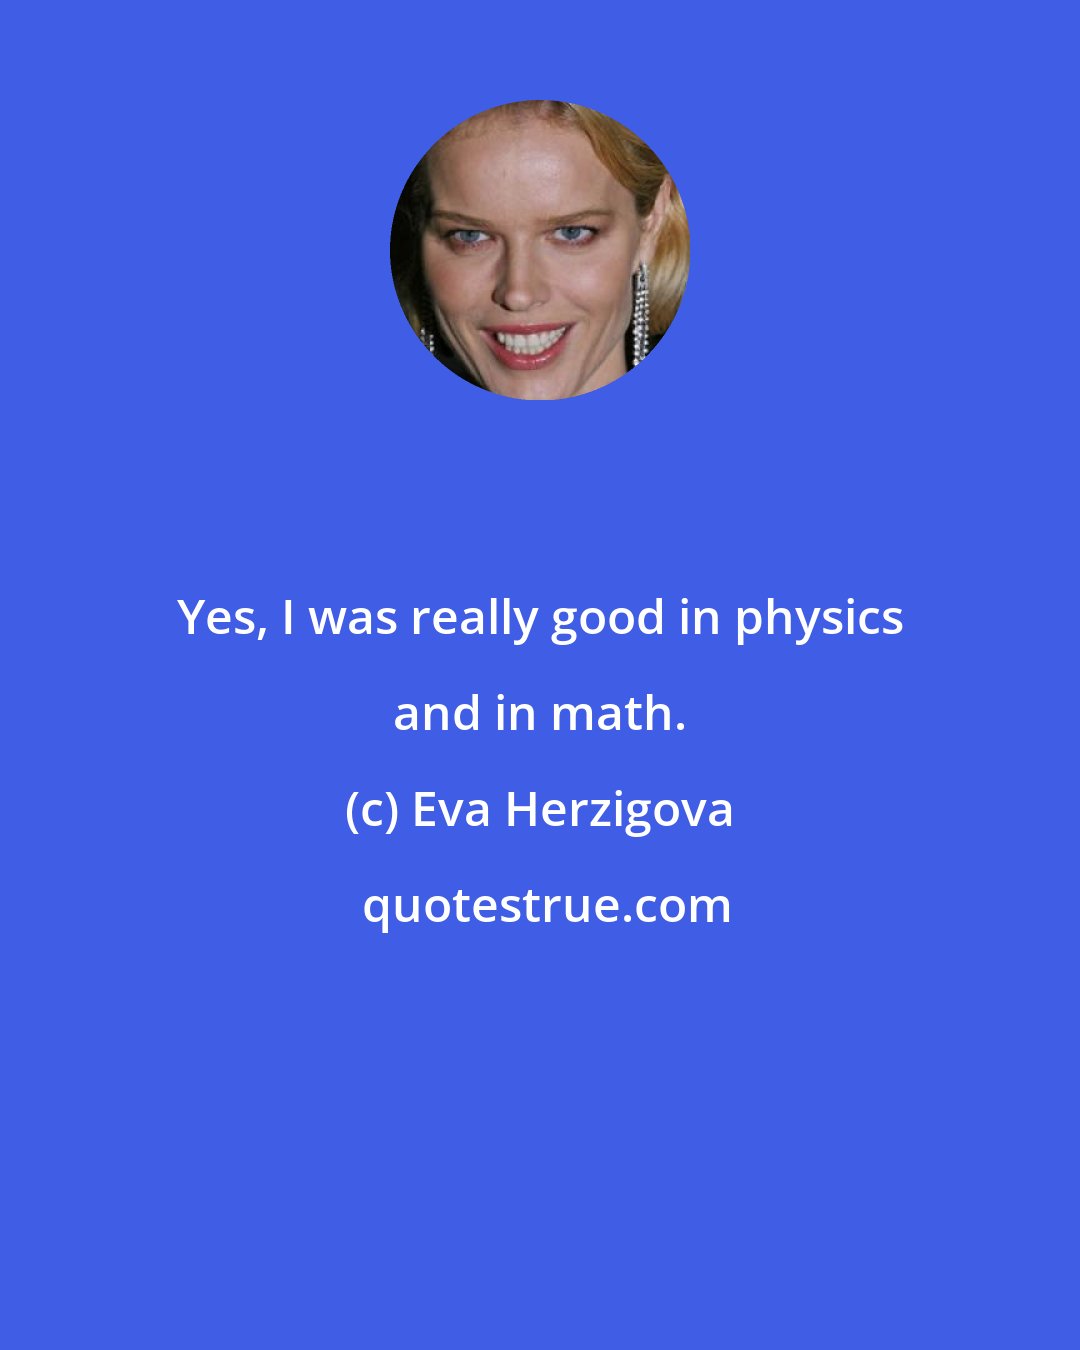 Eva Herzigova: Yes, I was really good in physics and in math.